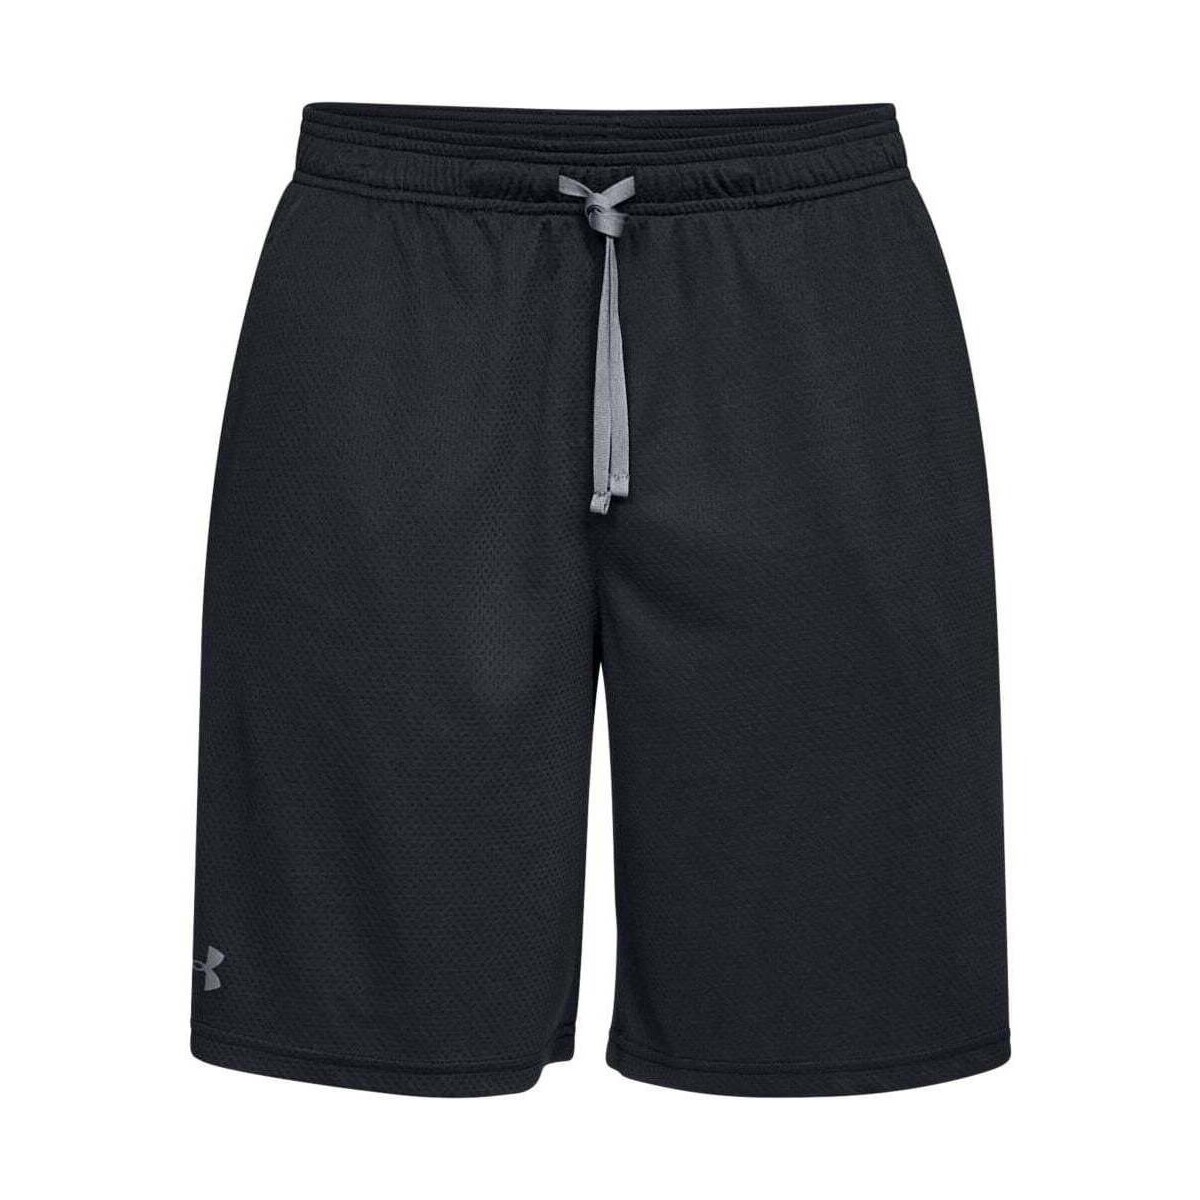 Vêtements Homme Shorts / Bermudas Under Armour UA Tech Mesh Shorts Noir